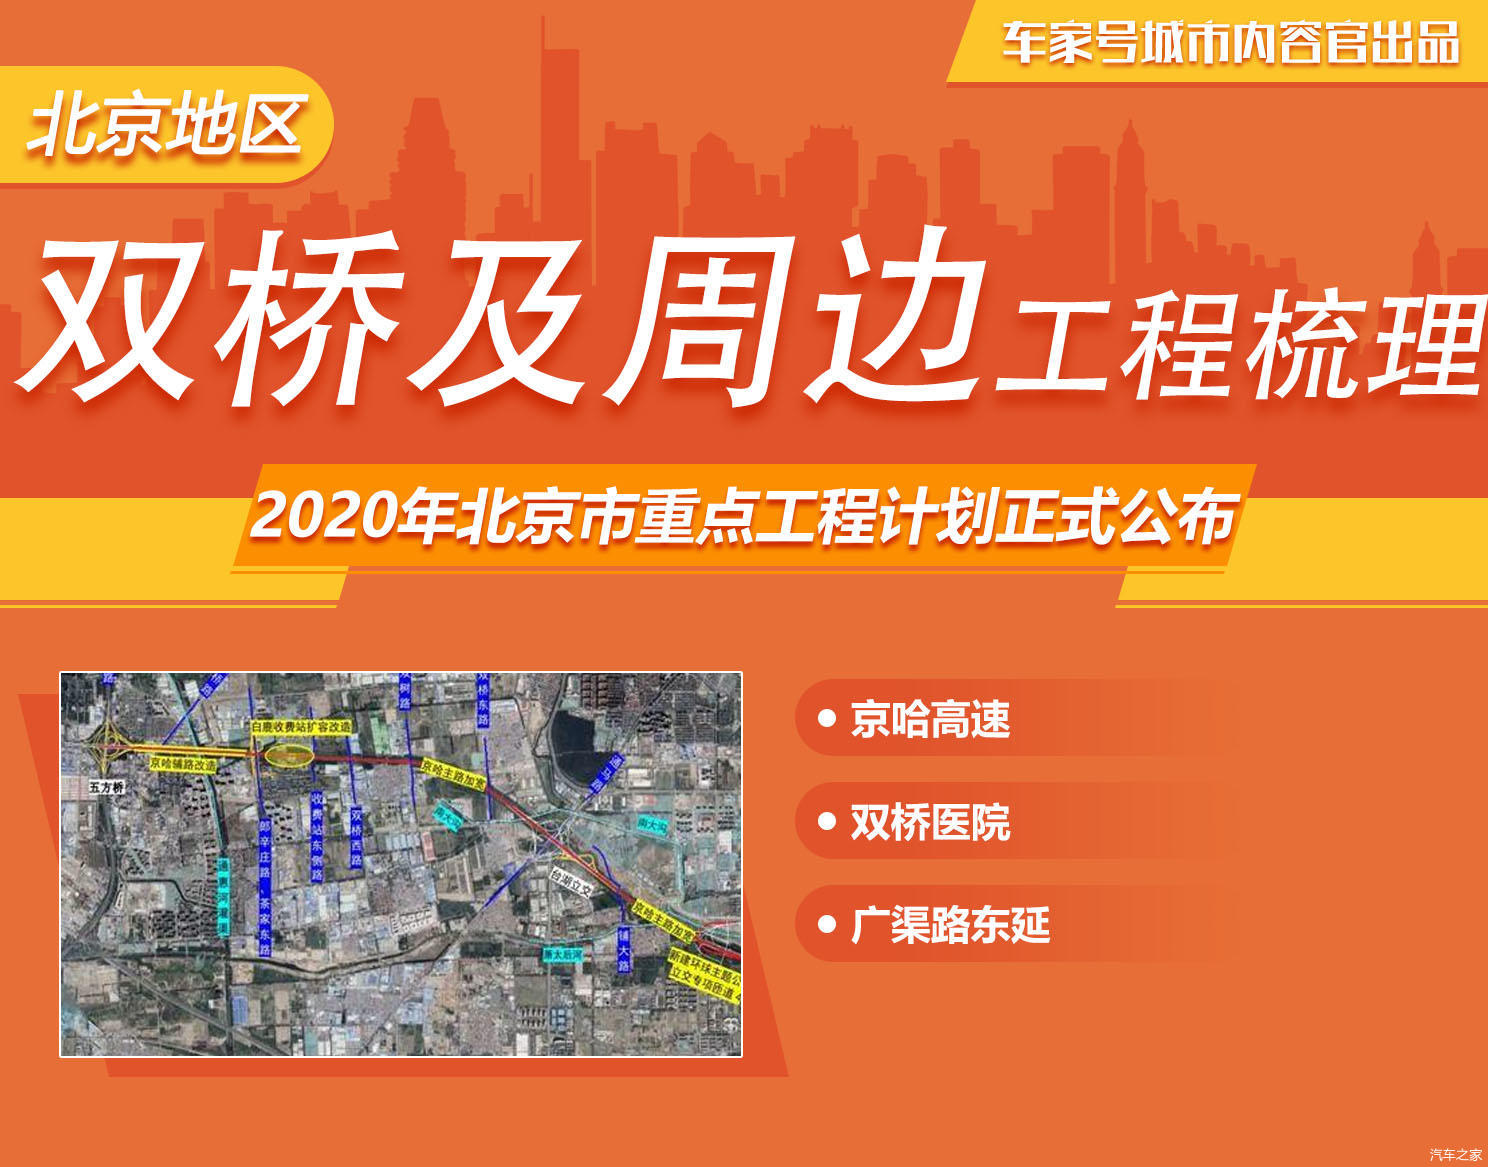 2020年北京市重点工程计划发布 涉及双桥及周边工程梳理（金台铁路五标）